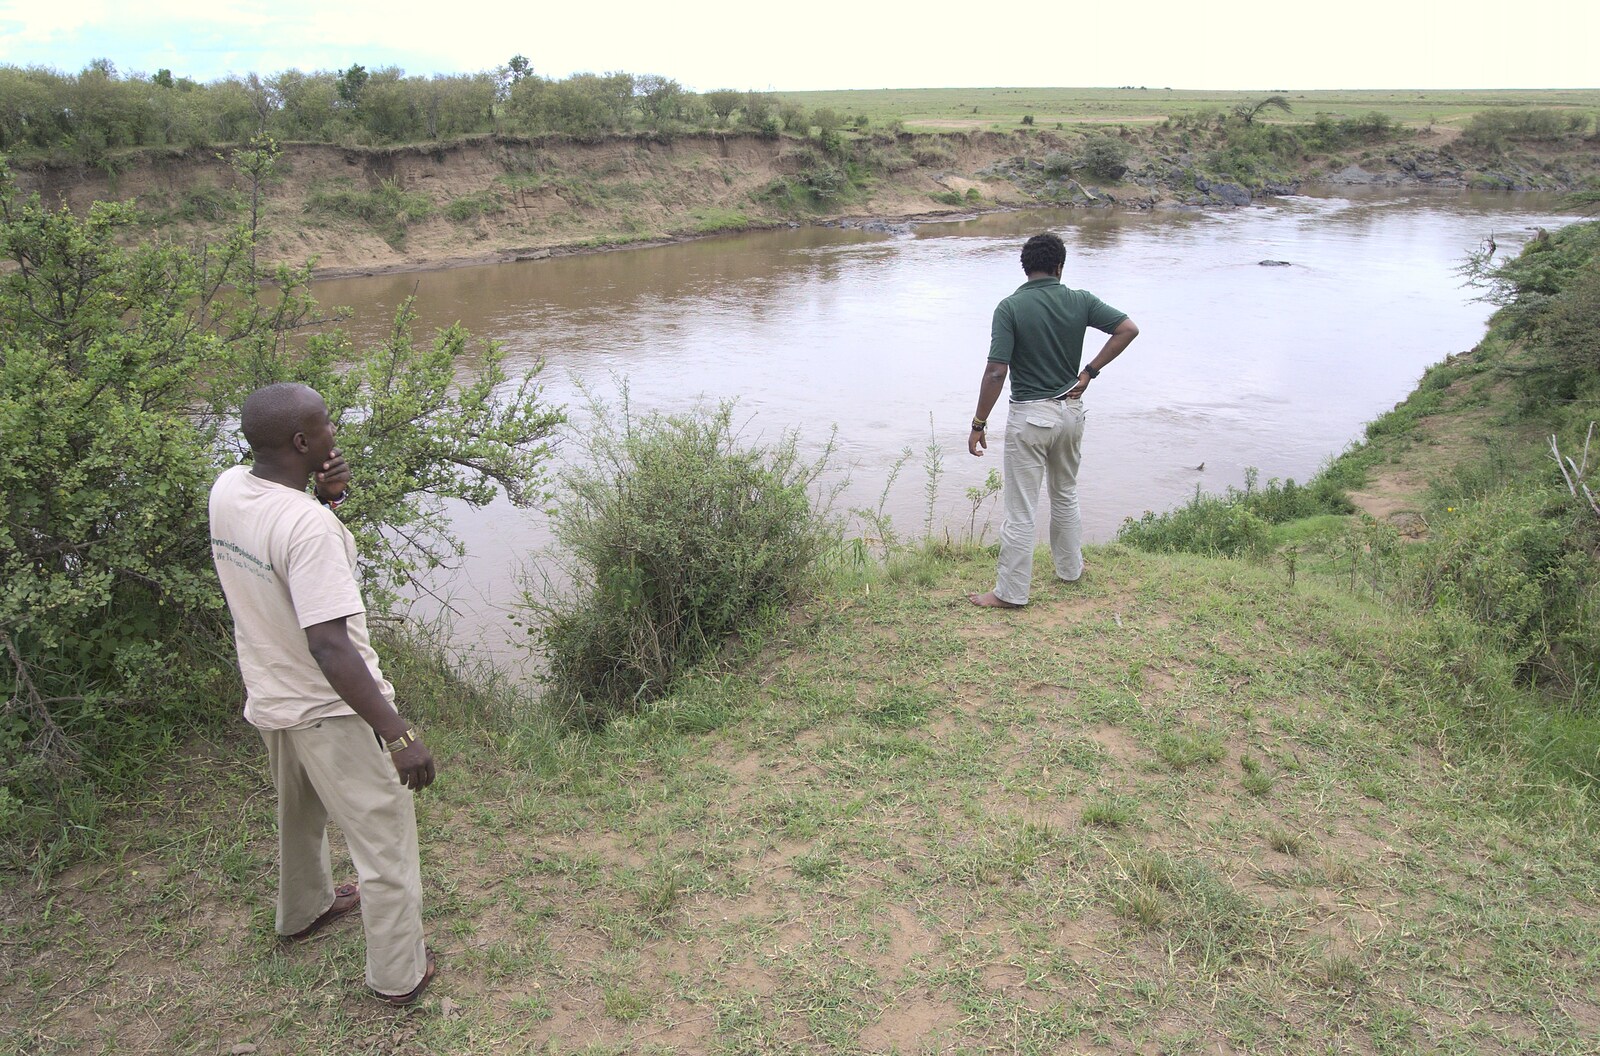 Will scopes out the river for wildlife from Maasai Mara Safari and a Maasai Village, Ololaimutia, Kenya - 5th November 2010